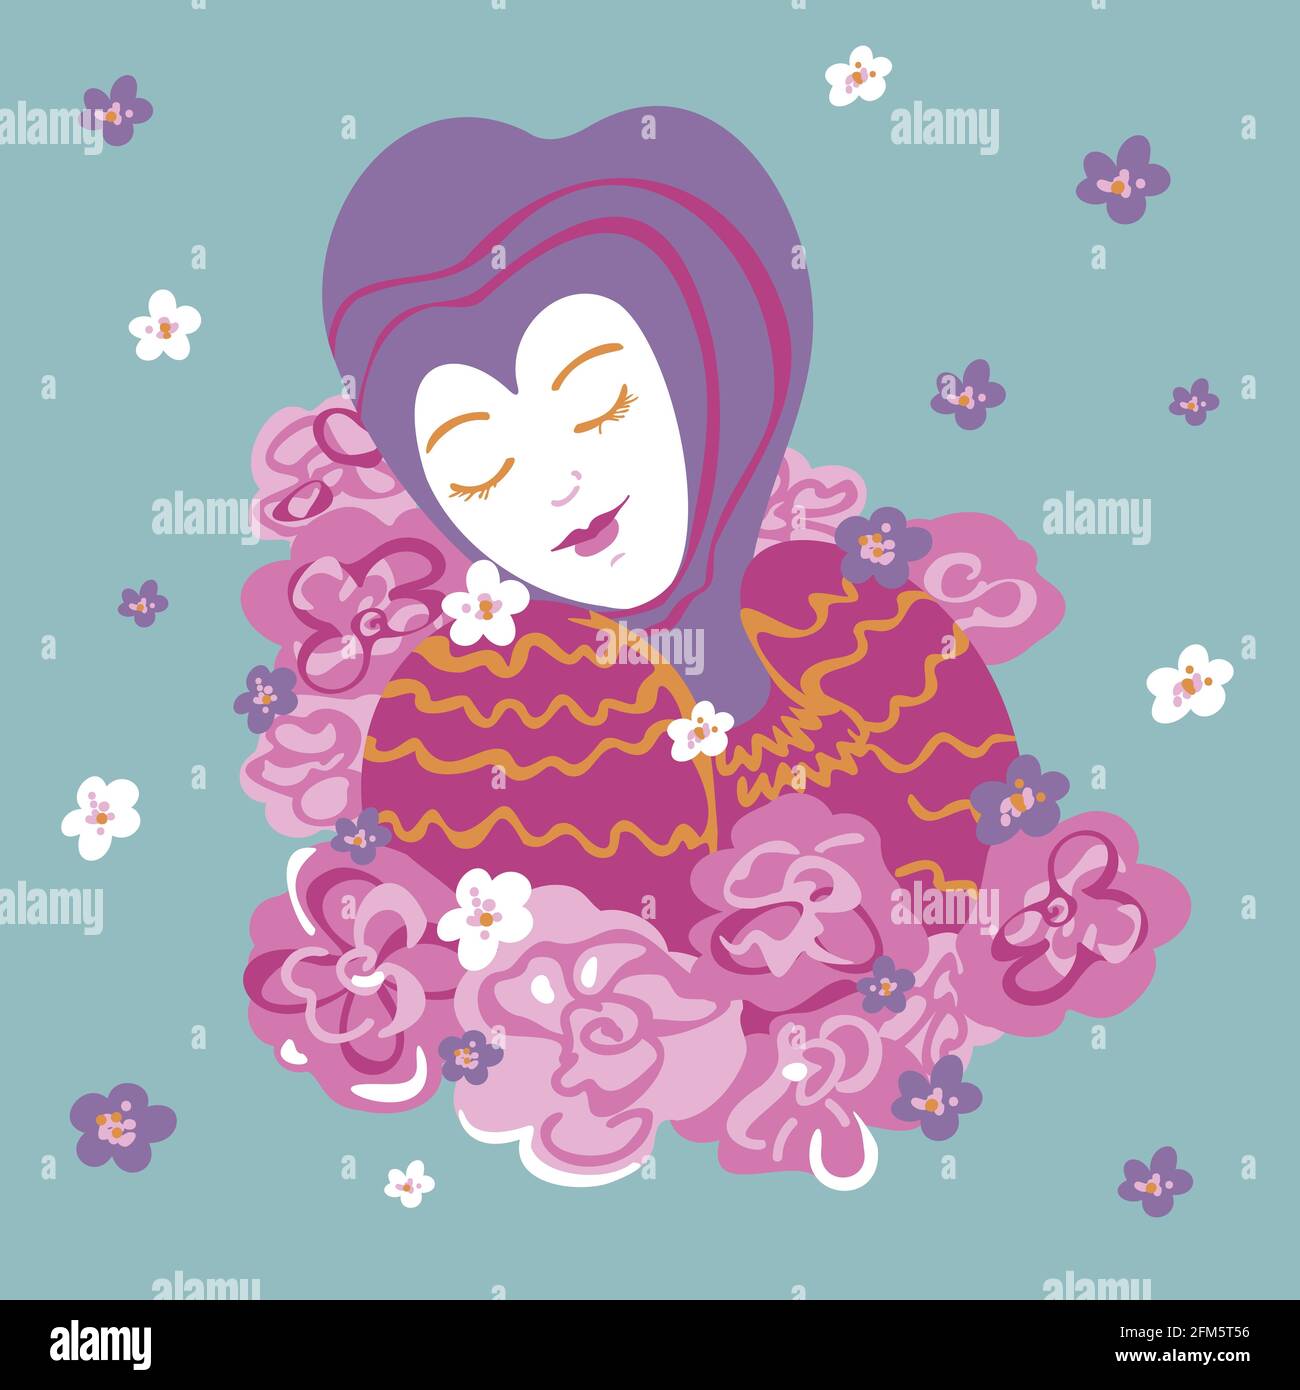 Vektor-Illustration von hübschen Frau in Fantasy-Kleidung. Porträt einer Dame auf blauem Hintergrund mit Blumen. Stock Vektor